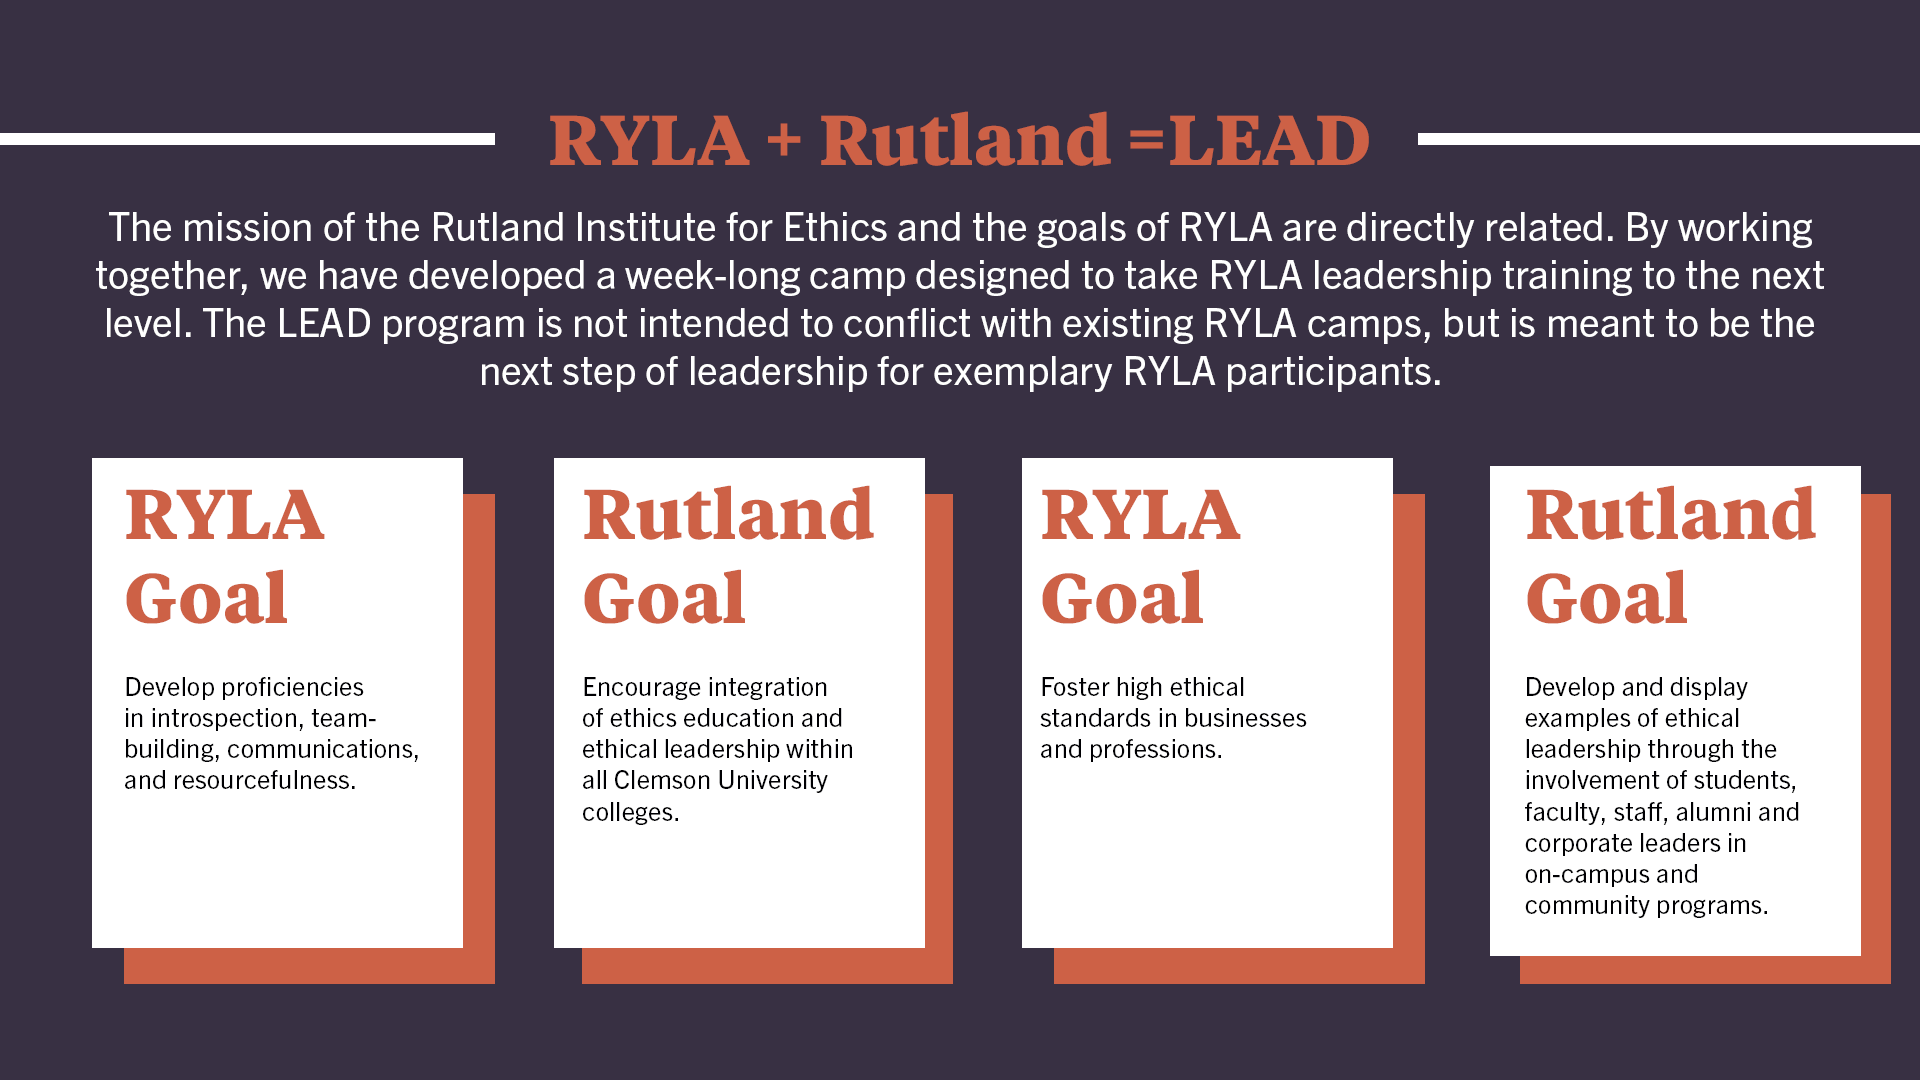 RYLA and Rutland Program Goals